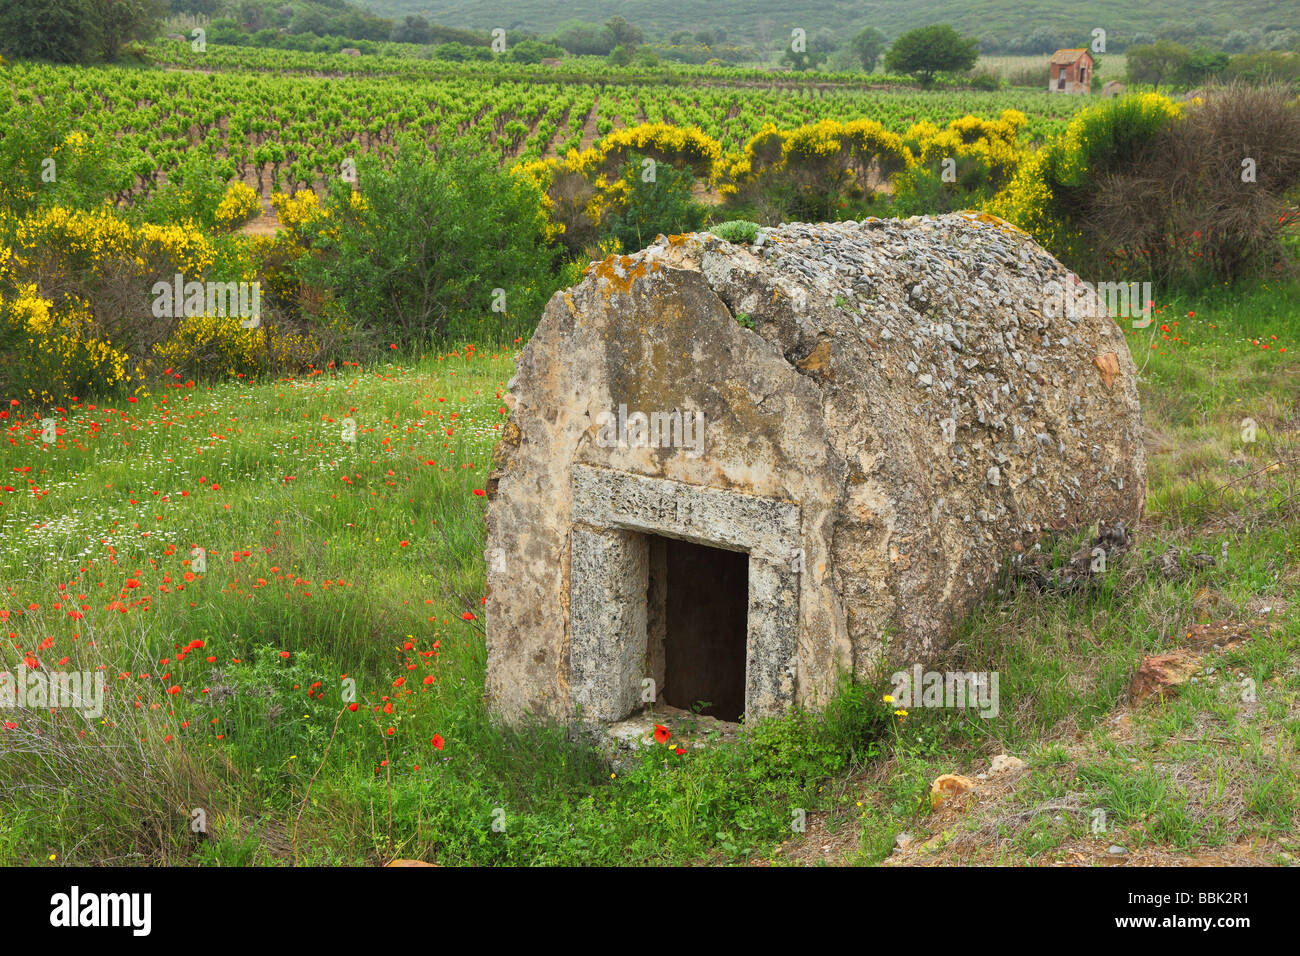 Vieille cabane en pierre dans une prairie au printemps Minervois Languedoc-Rousillon France balai en fleurs coquelicots en fleurs Banque D'Images